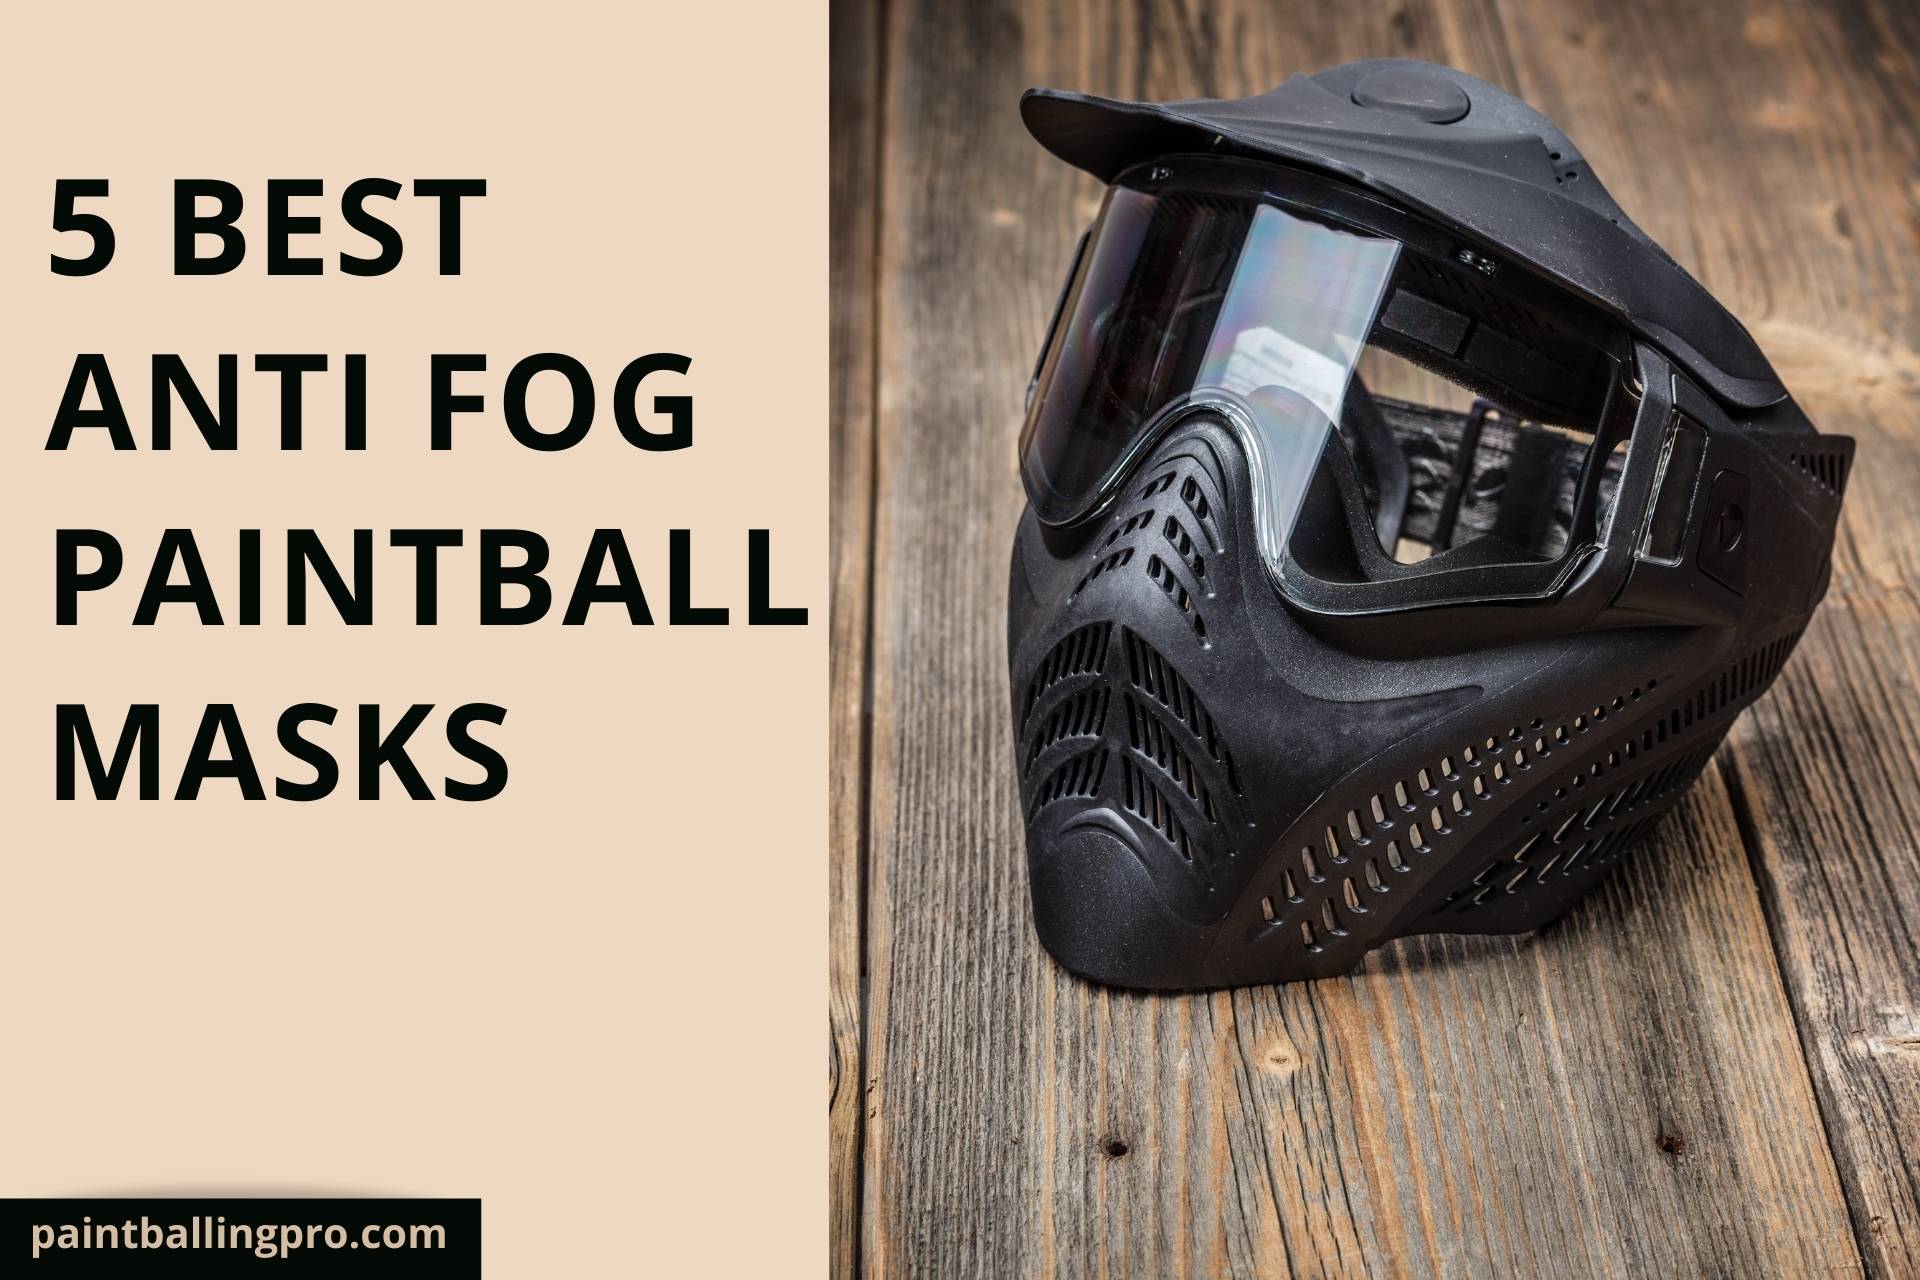 Best Anti Fog Paintball Mask